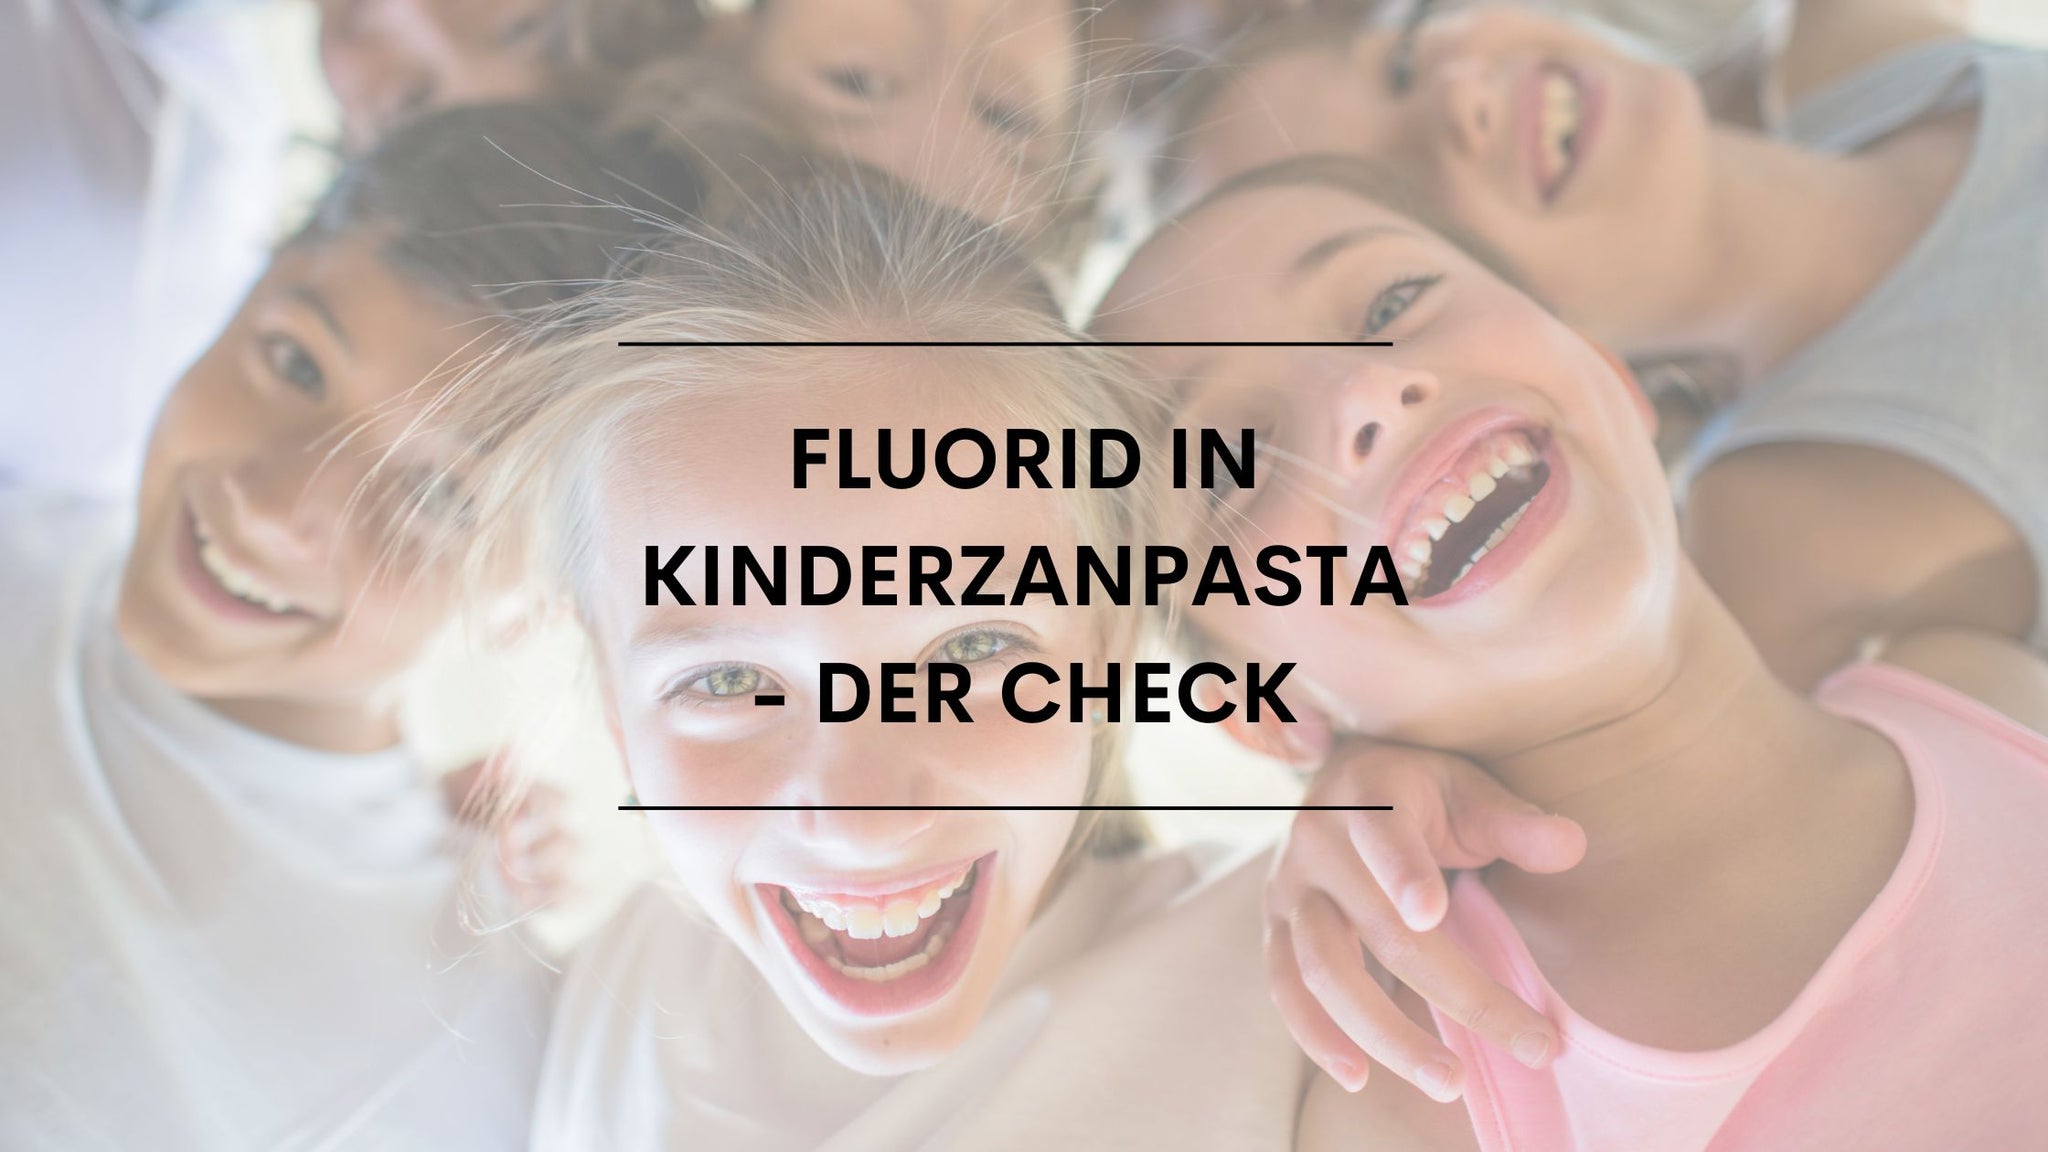 Fluorid in Kinderzahnpasta - der Check